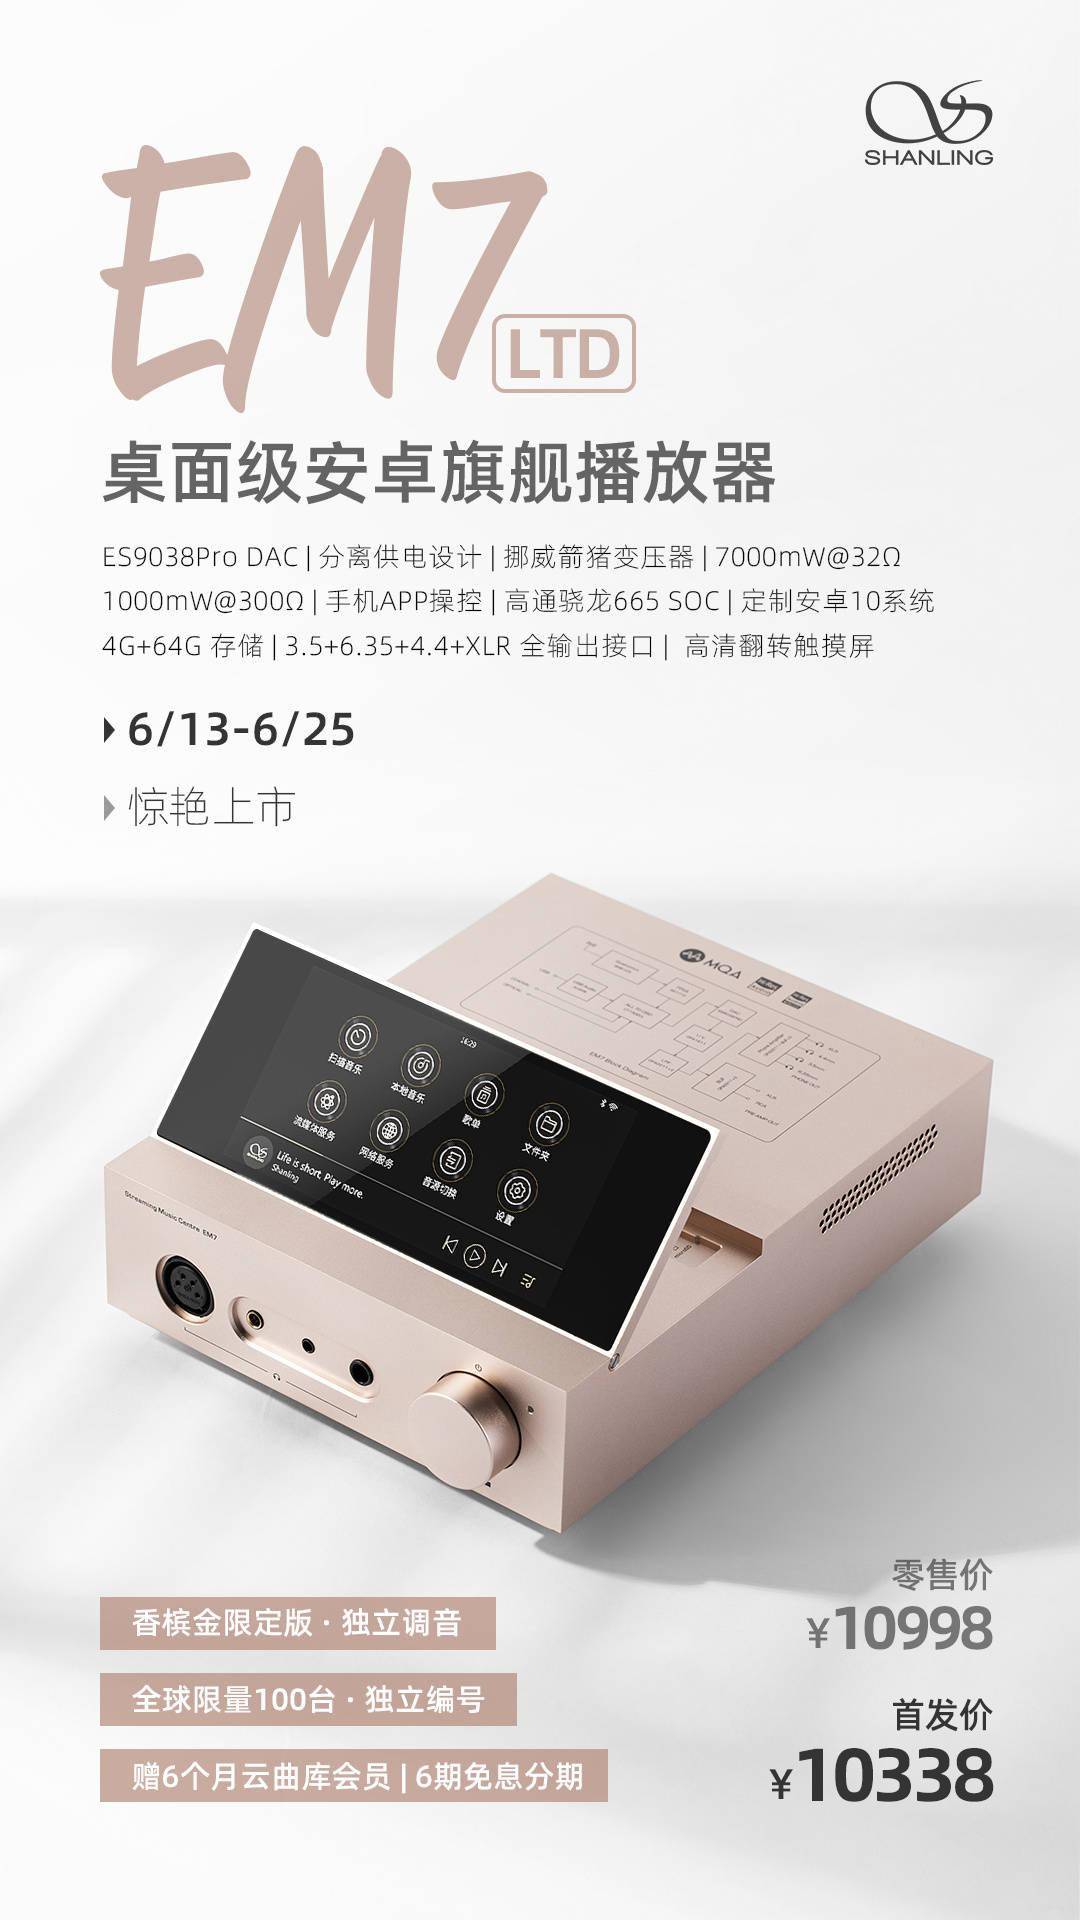 山灵发布EM7 LTD桌面级安卓旗舰播放器 采用全新调音